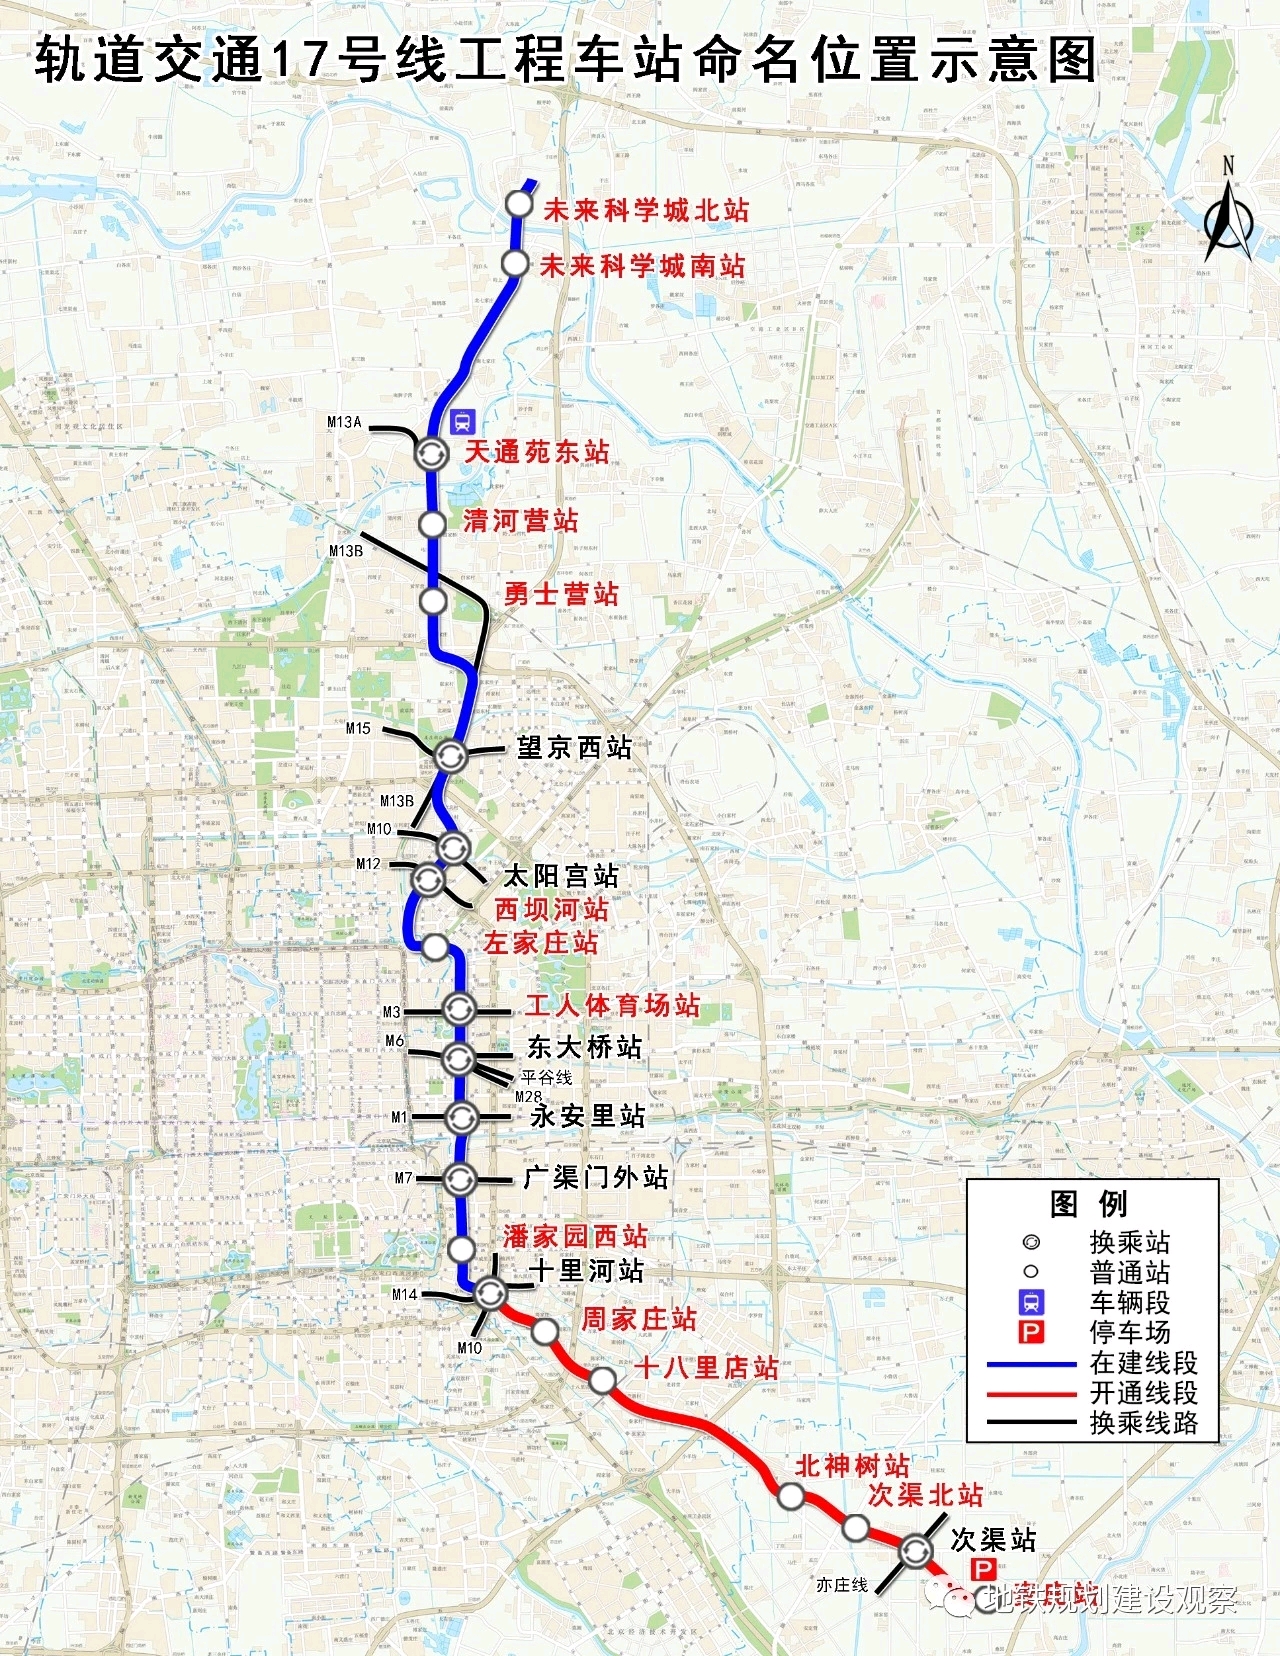 【北京地铁科普向】现有线路与规划线路简单介绍(2021